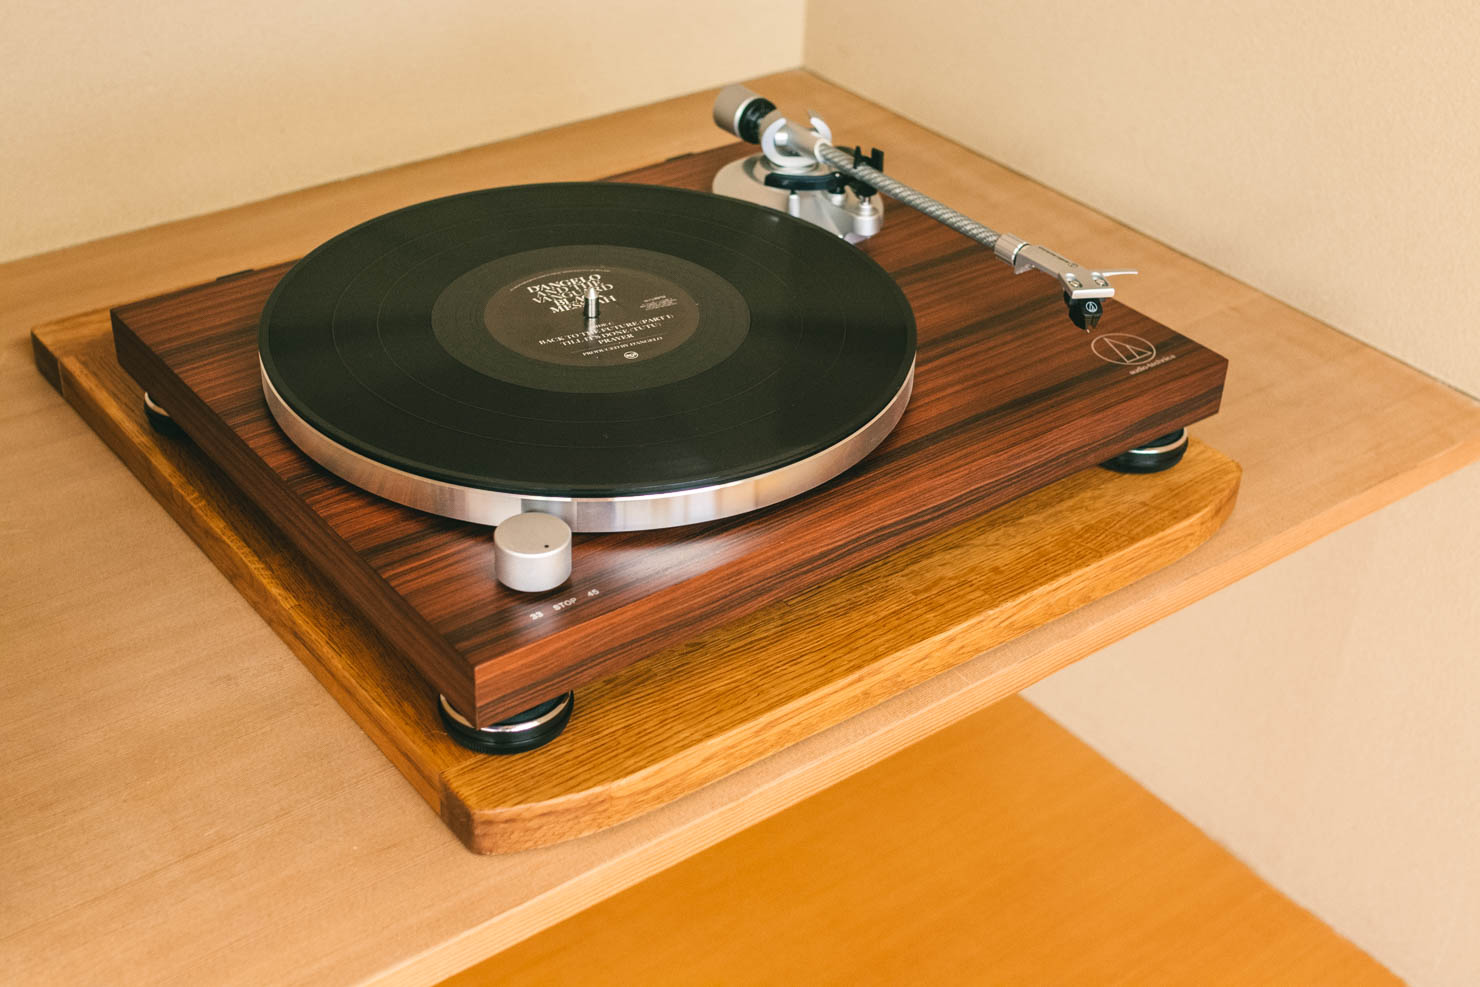 丈夫な板を1枚敷くだけなど、簡単な工夫でもレコードの音は大きく変わる。 